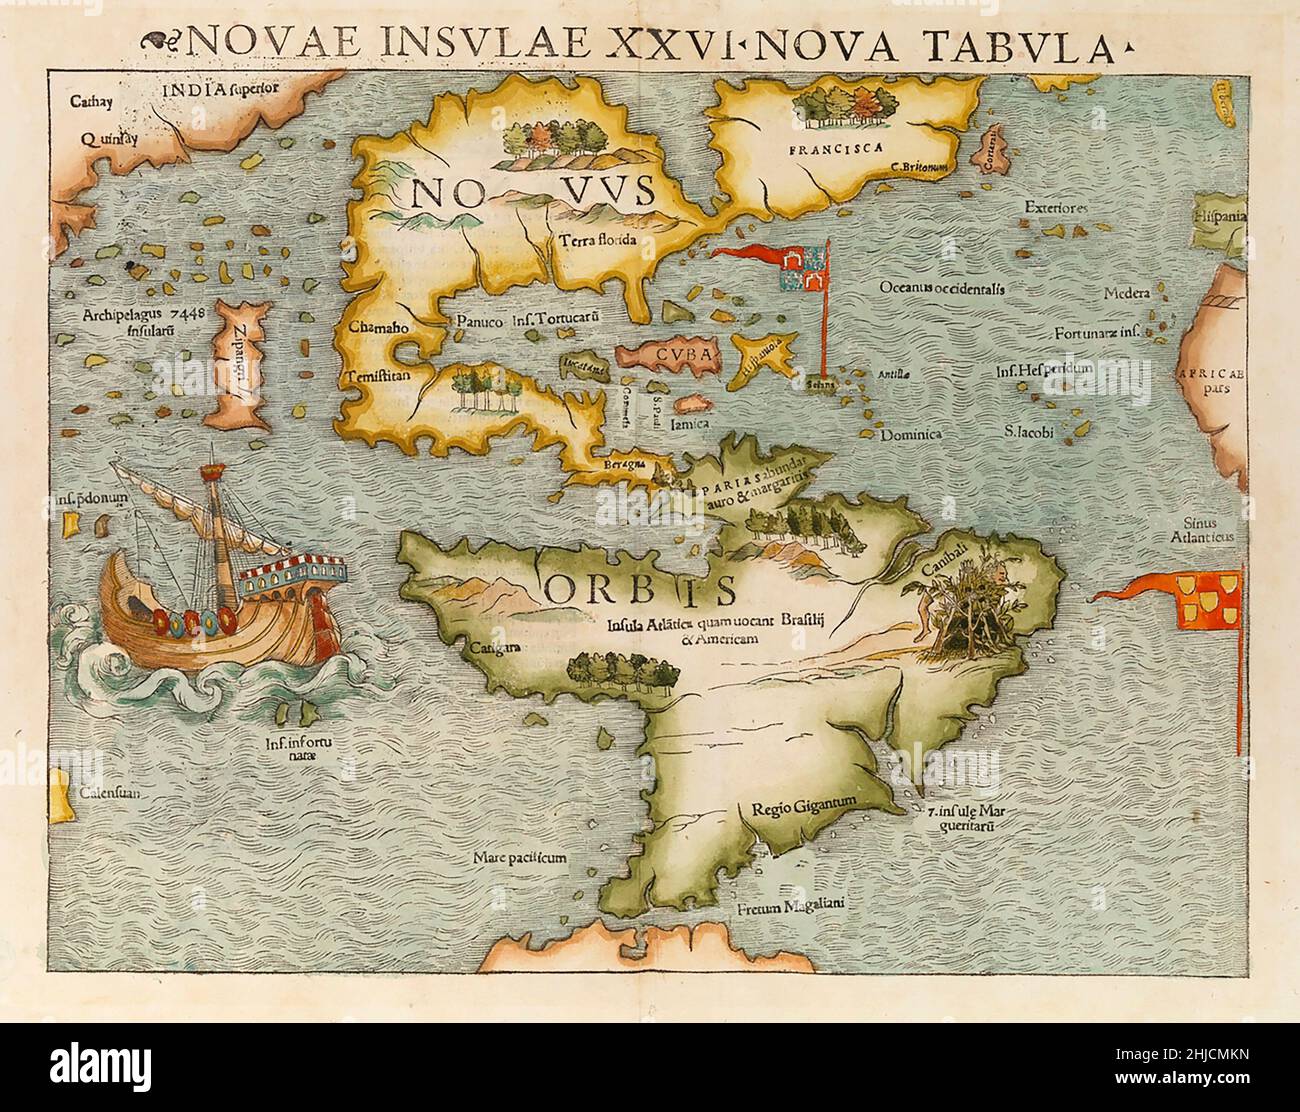 Karte mit Nord- und Südamerika als Neue Welt. Die Karte erschien erstmals√ºnster in Sebastian M 1544 Cosmographia. Es gilt als das erste, das die gesamten Kontinente Nord- und Südamerikas zeigt. Stockfoto